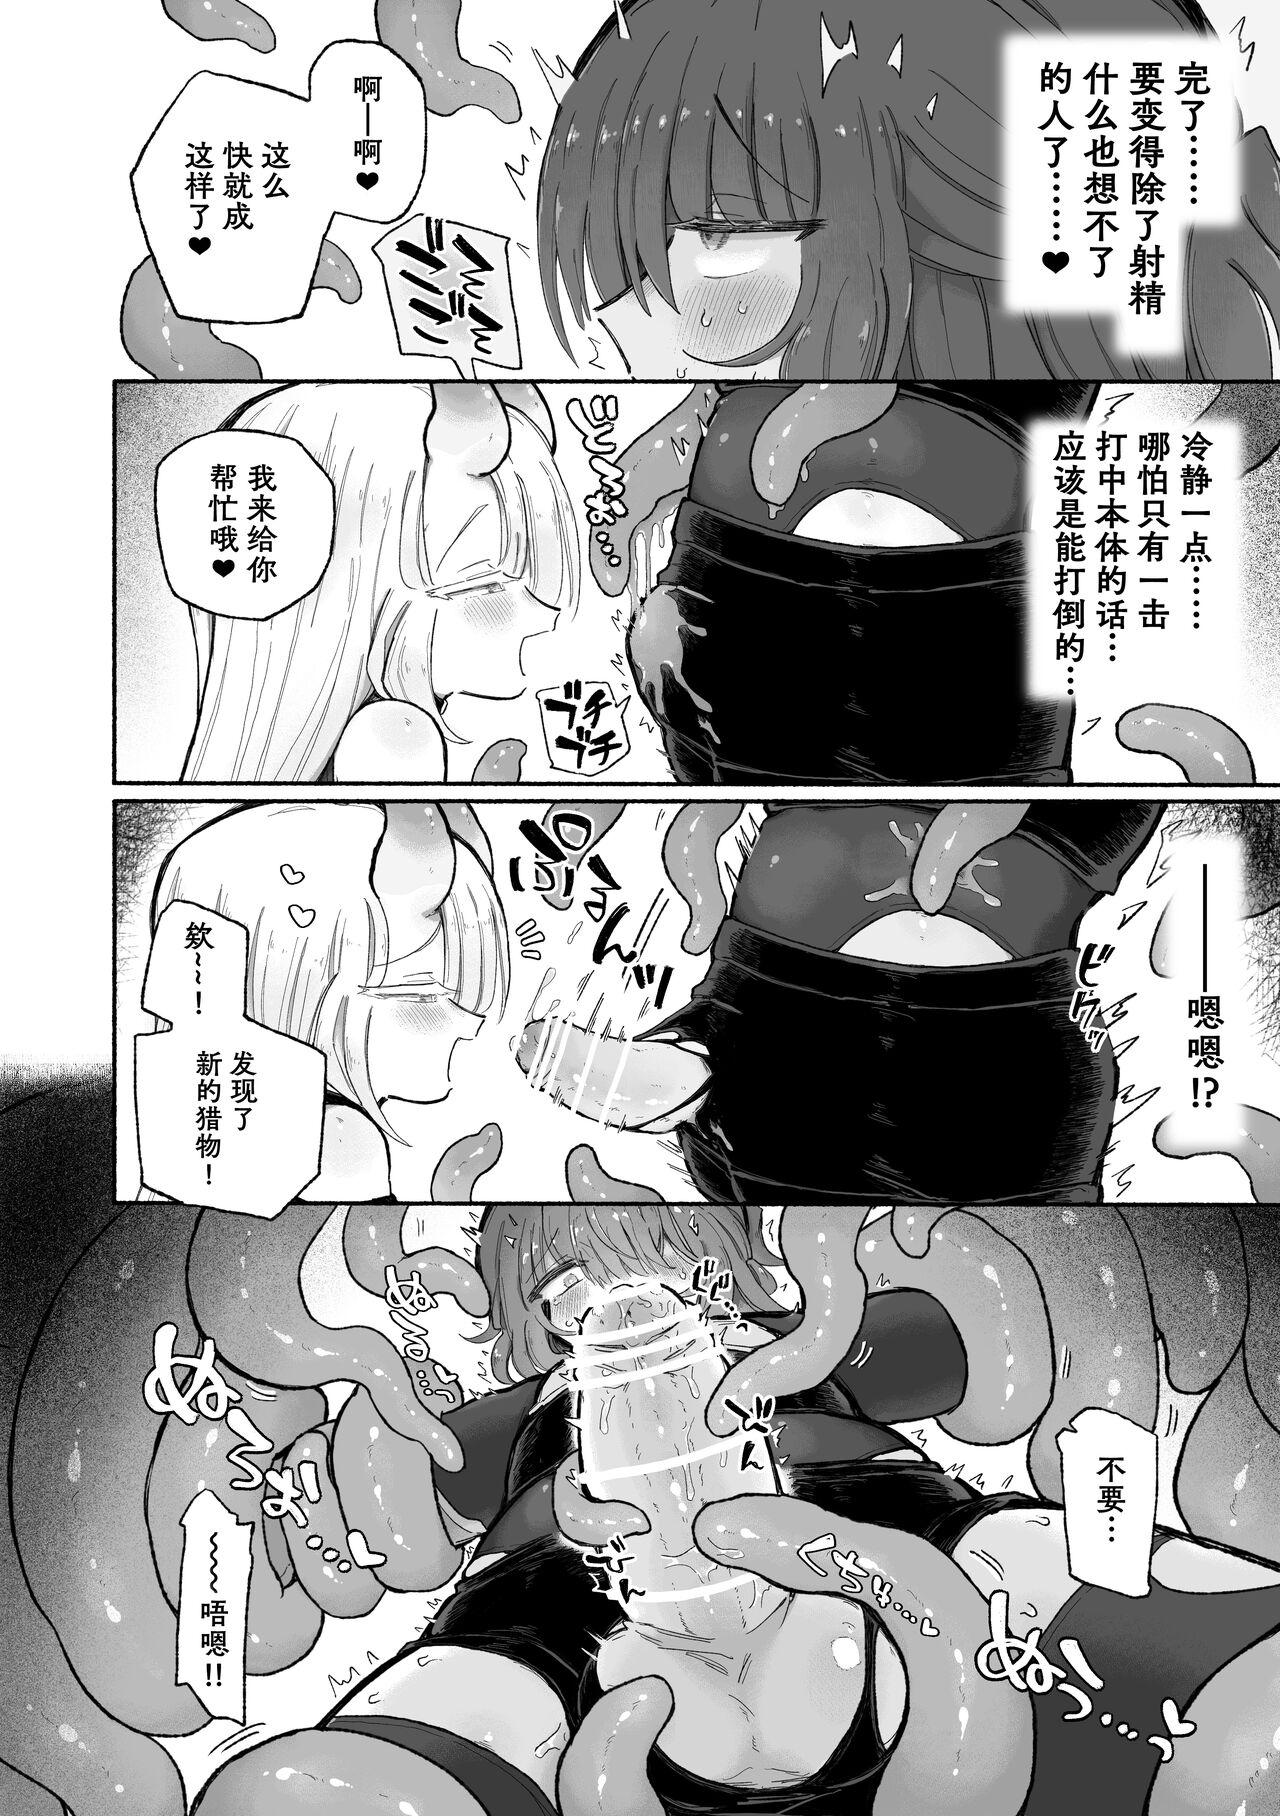 Anime Do hamari chui no kyosei danjon! 〜Mugen shasei no kairaku jigoku e yokoso〜 - Original Soapy Massage - Page 11